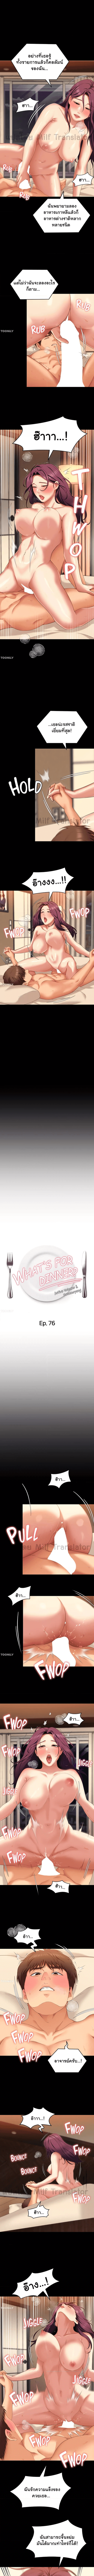 Tonight, Youâre My Dinner 76 (1)